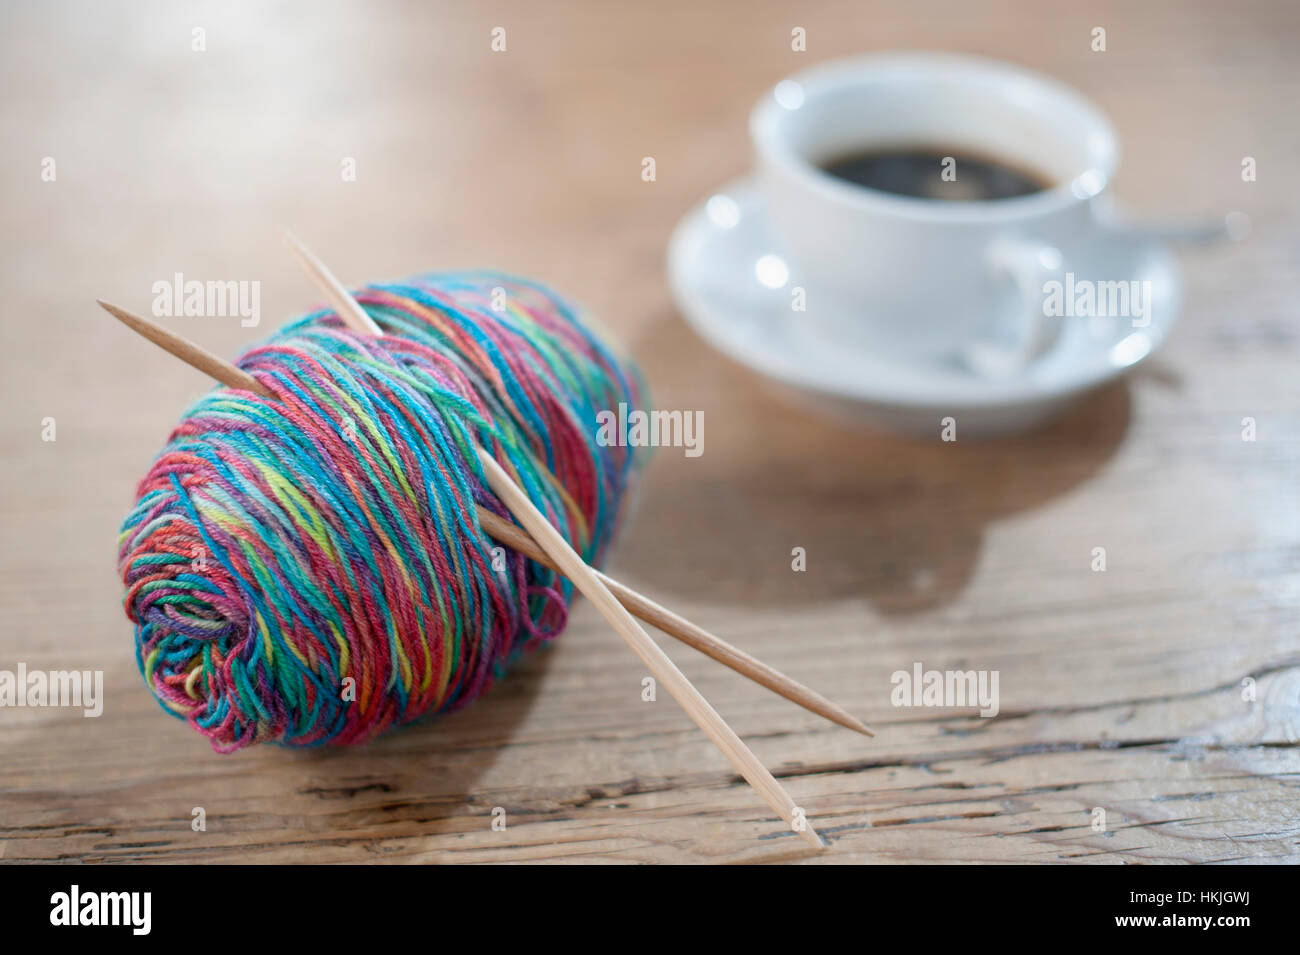 De fil en aiguille à tricoter colorées sur bois, Bavière, Allemagne Banque D'Images